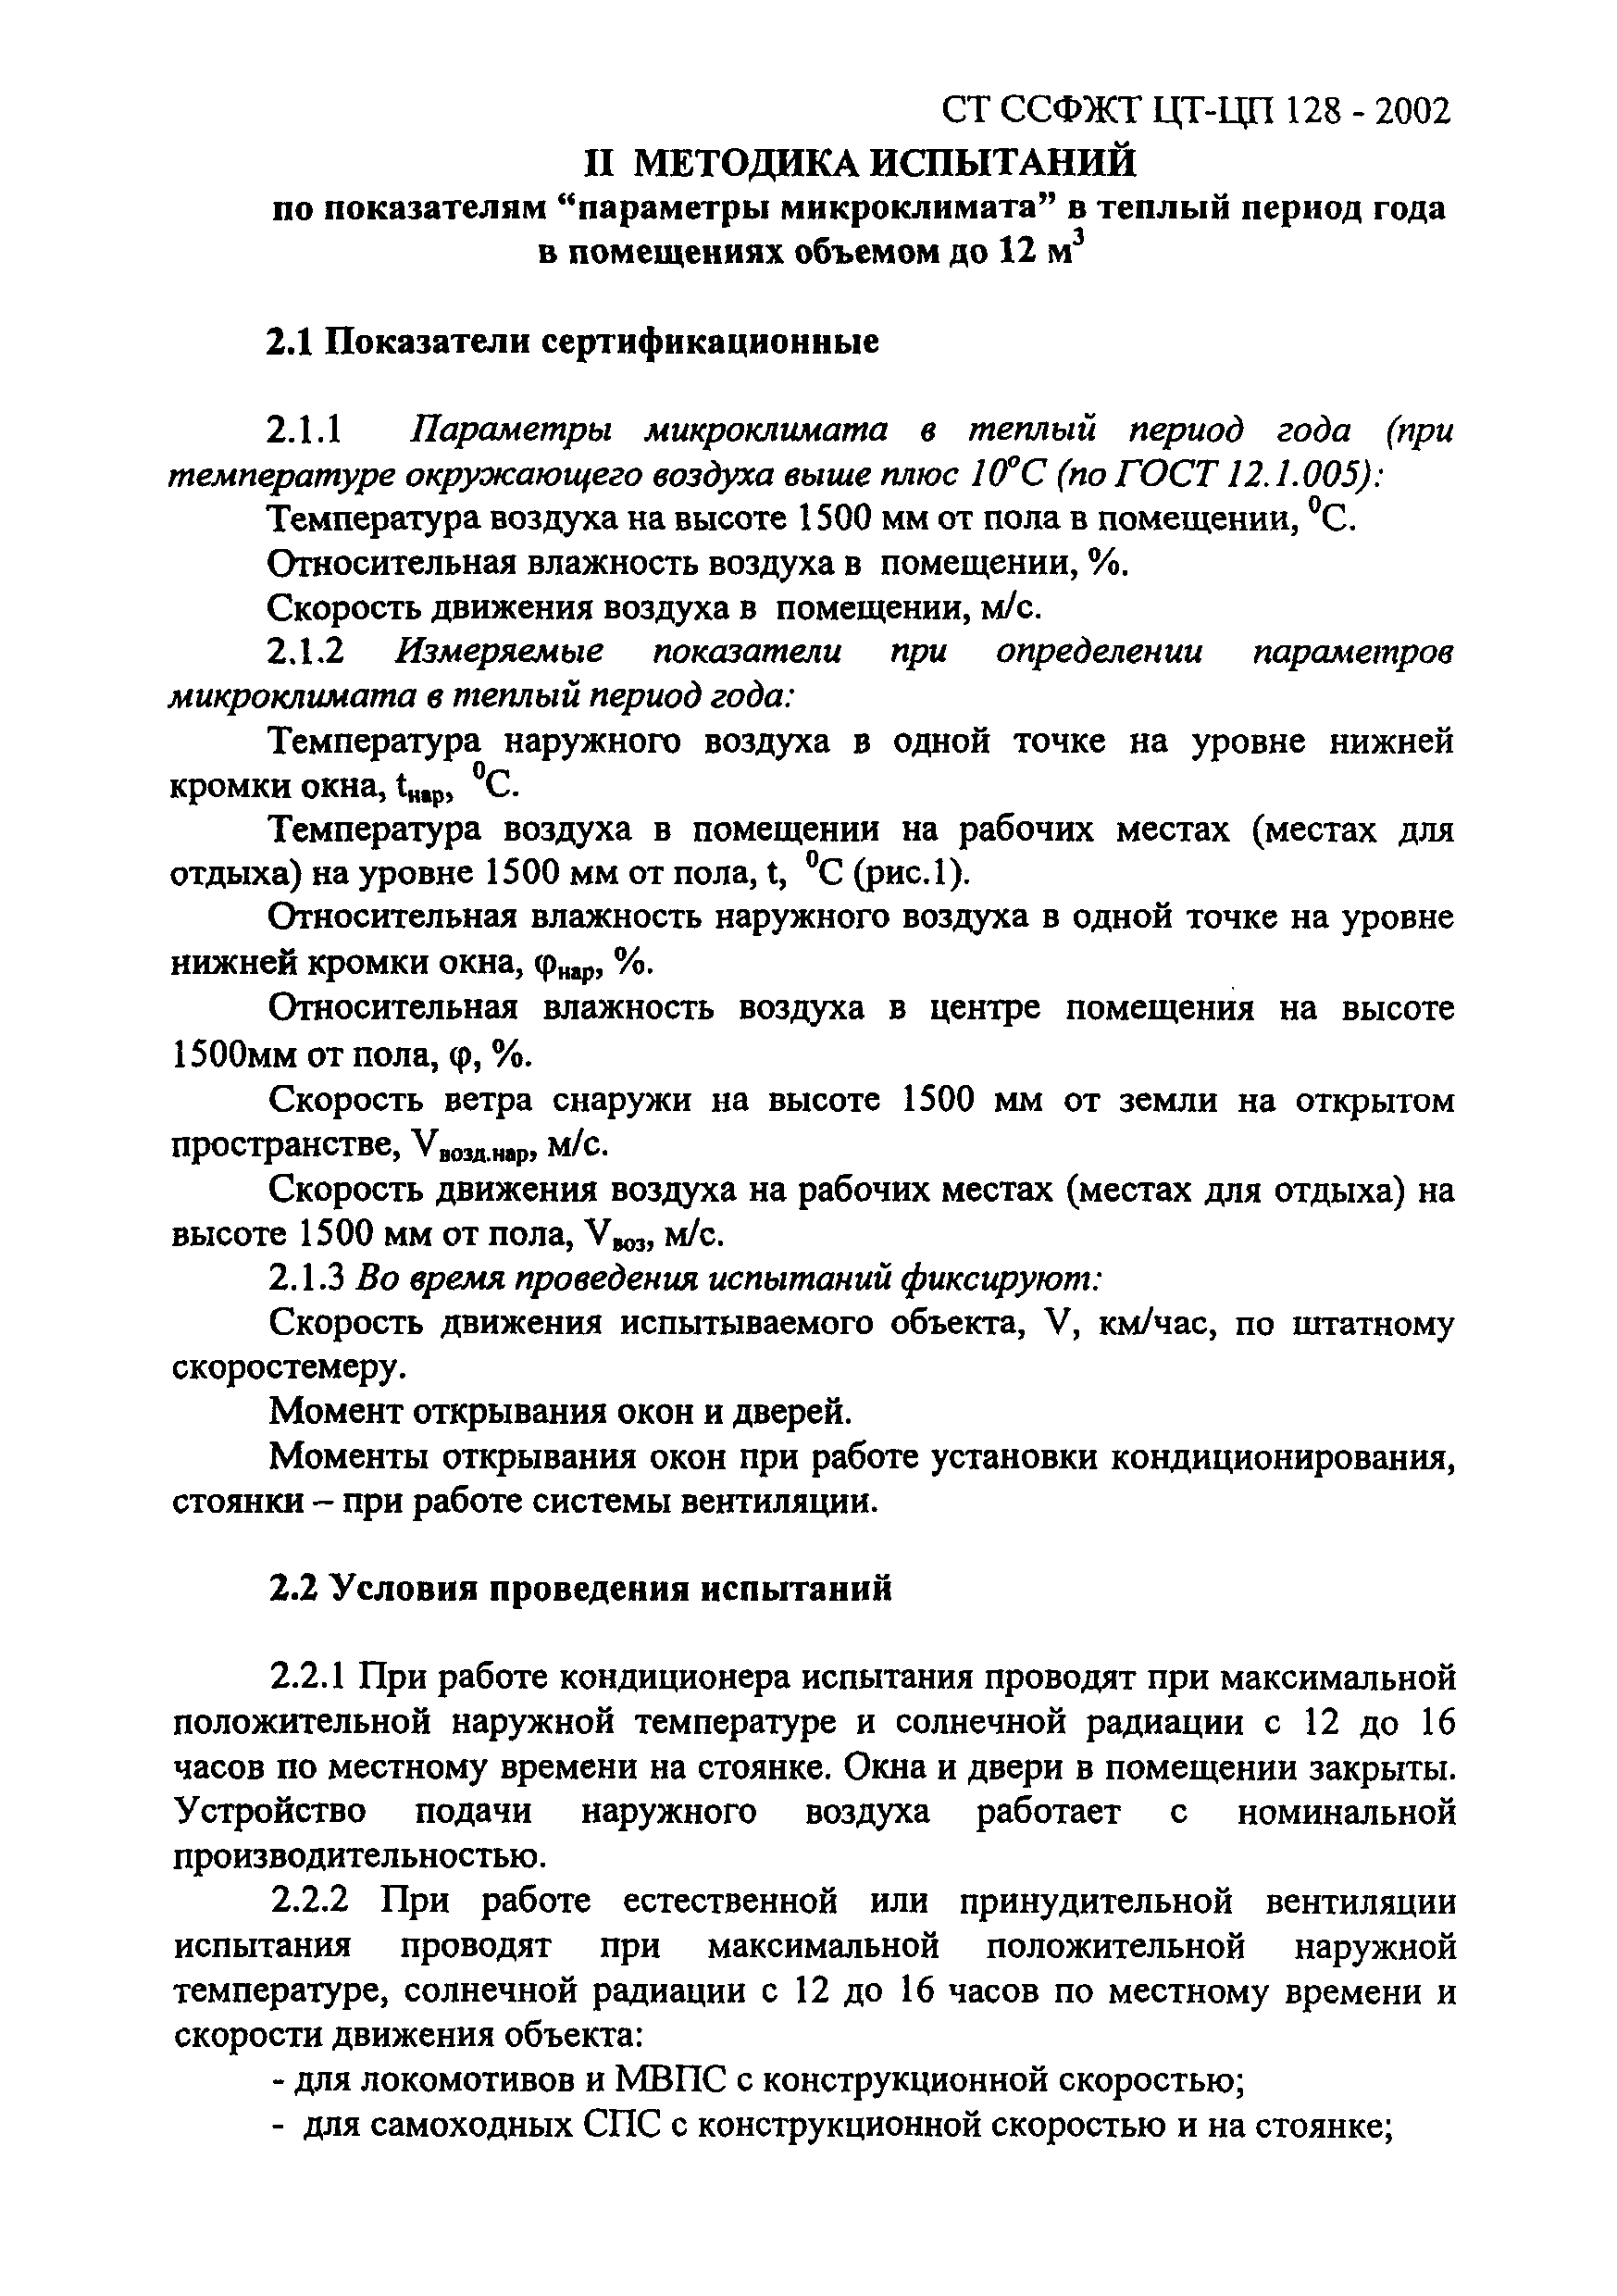 СТ ССФЖТ ЦТ-ЦП 128-2002